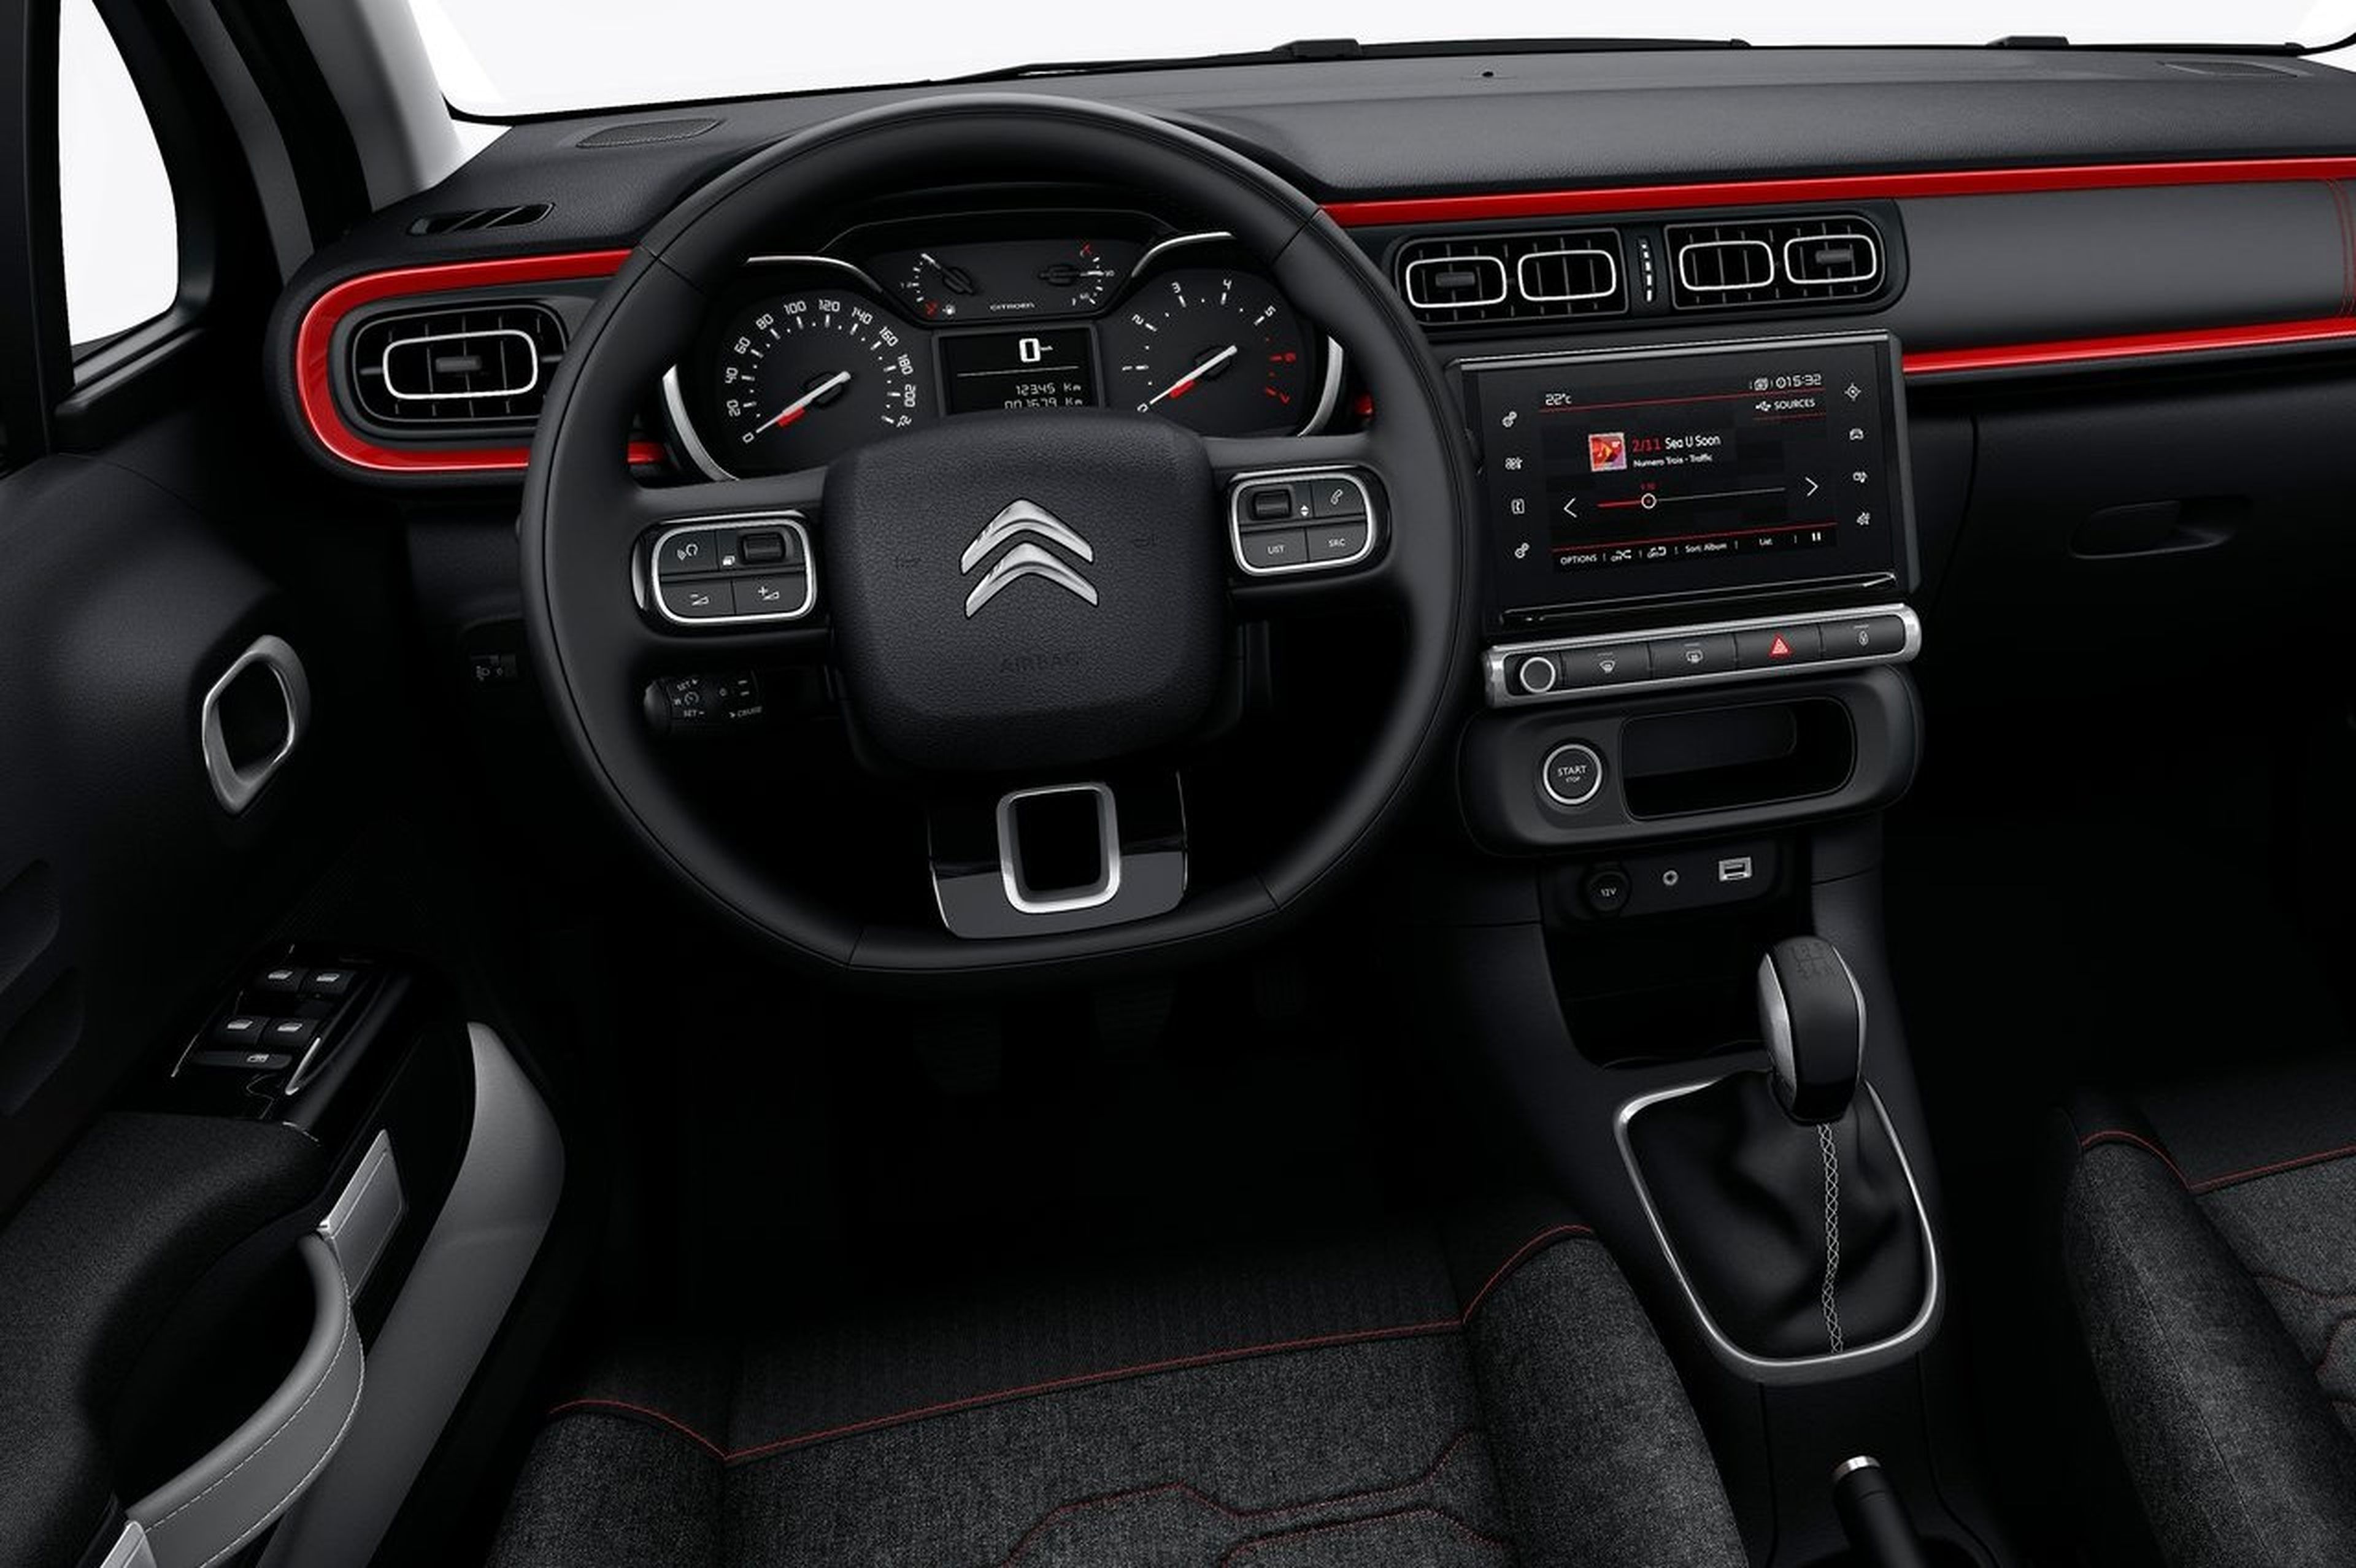 Citroën C3 antiguo: Evolución al actual